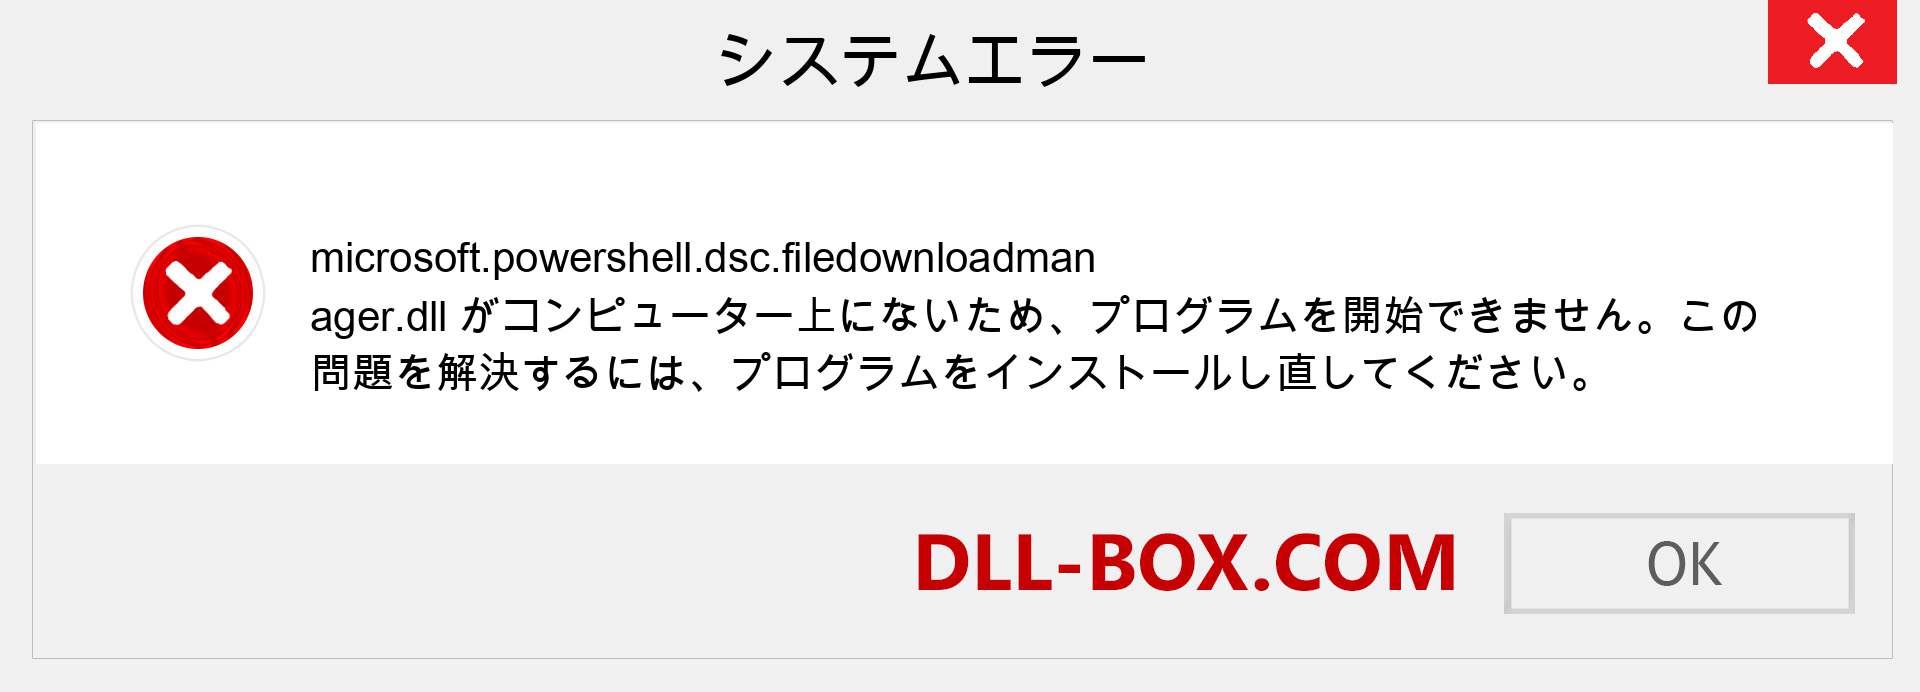 microsoft.powershell.dsc.filedownloadmanager.dllファイルがありませんか？ Windows 7、8、10用にダウンロード-Windows、写真、画像でmicrosoft.powershell.dsc.filedownloadmanagerdllの欠落エラーを修正